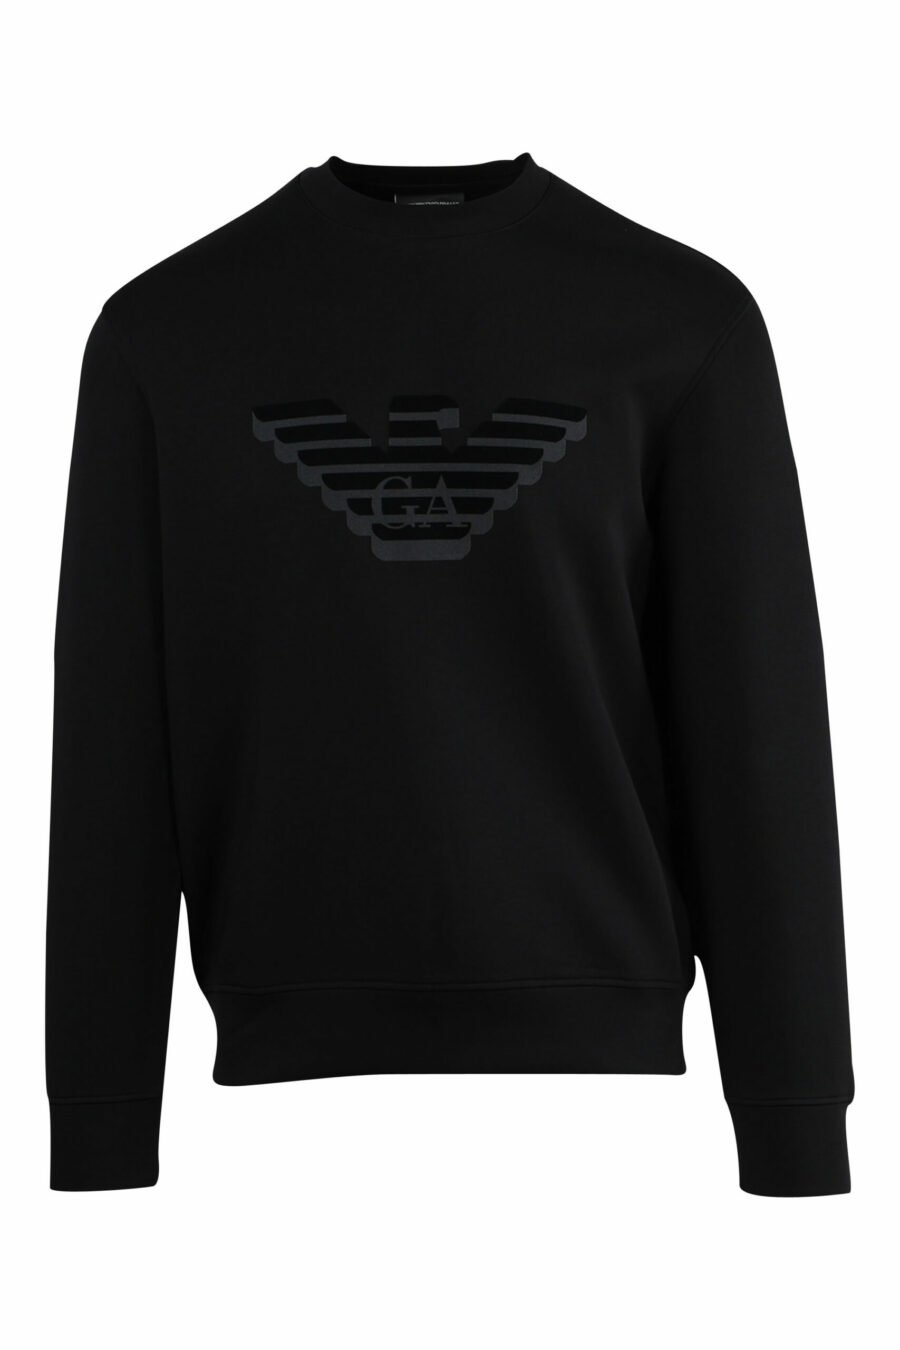 Black sweatshirt with eagle maxilogo - 8057767552367 1 scaled